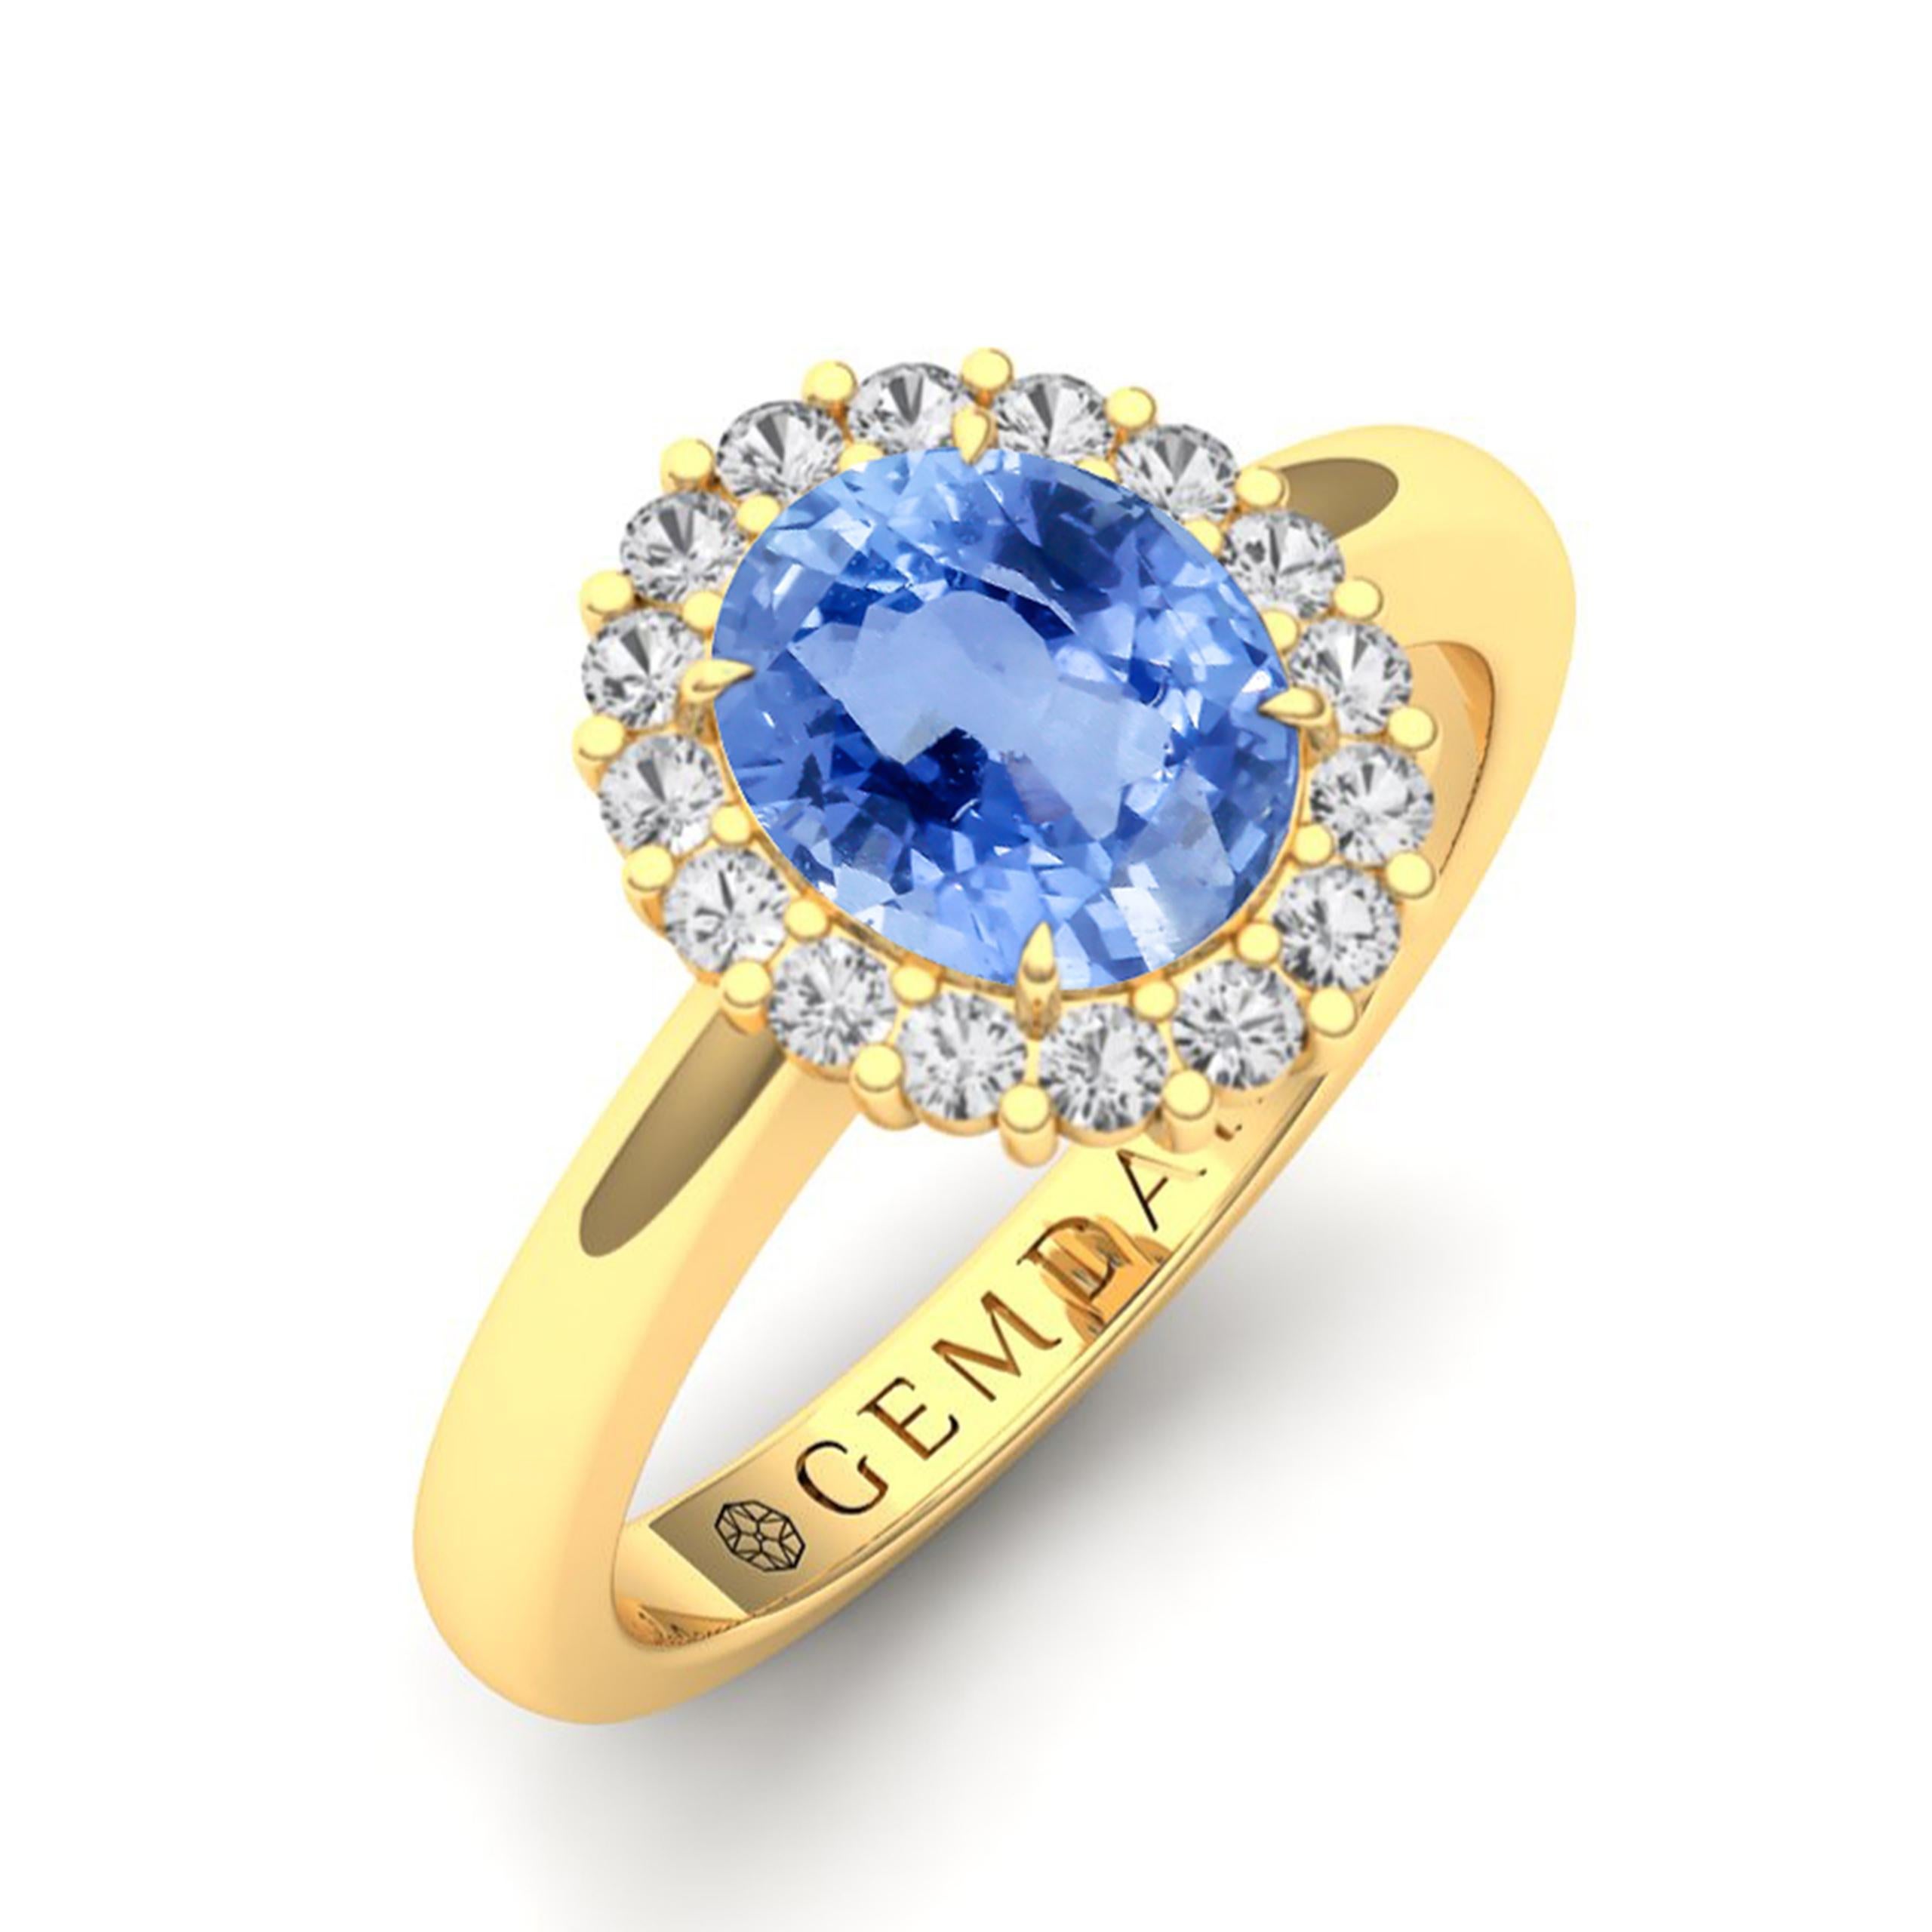 Unser maßgefertigter Ring mit einem unbehandelten blauen Ceylon-Saphir mit einem Gewicht von 2,12 Karat wird Sie mit seiner Raffinesse begeistern. Der lebhafte pastellblaue Farbton wird durch konfliktfreie Diamanten akzentuiert, die alle in